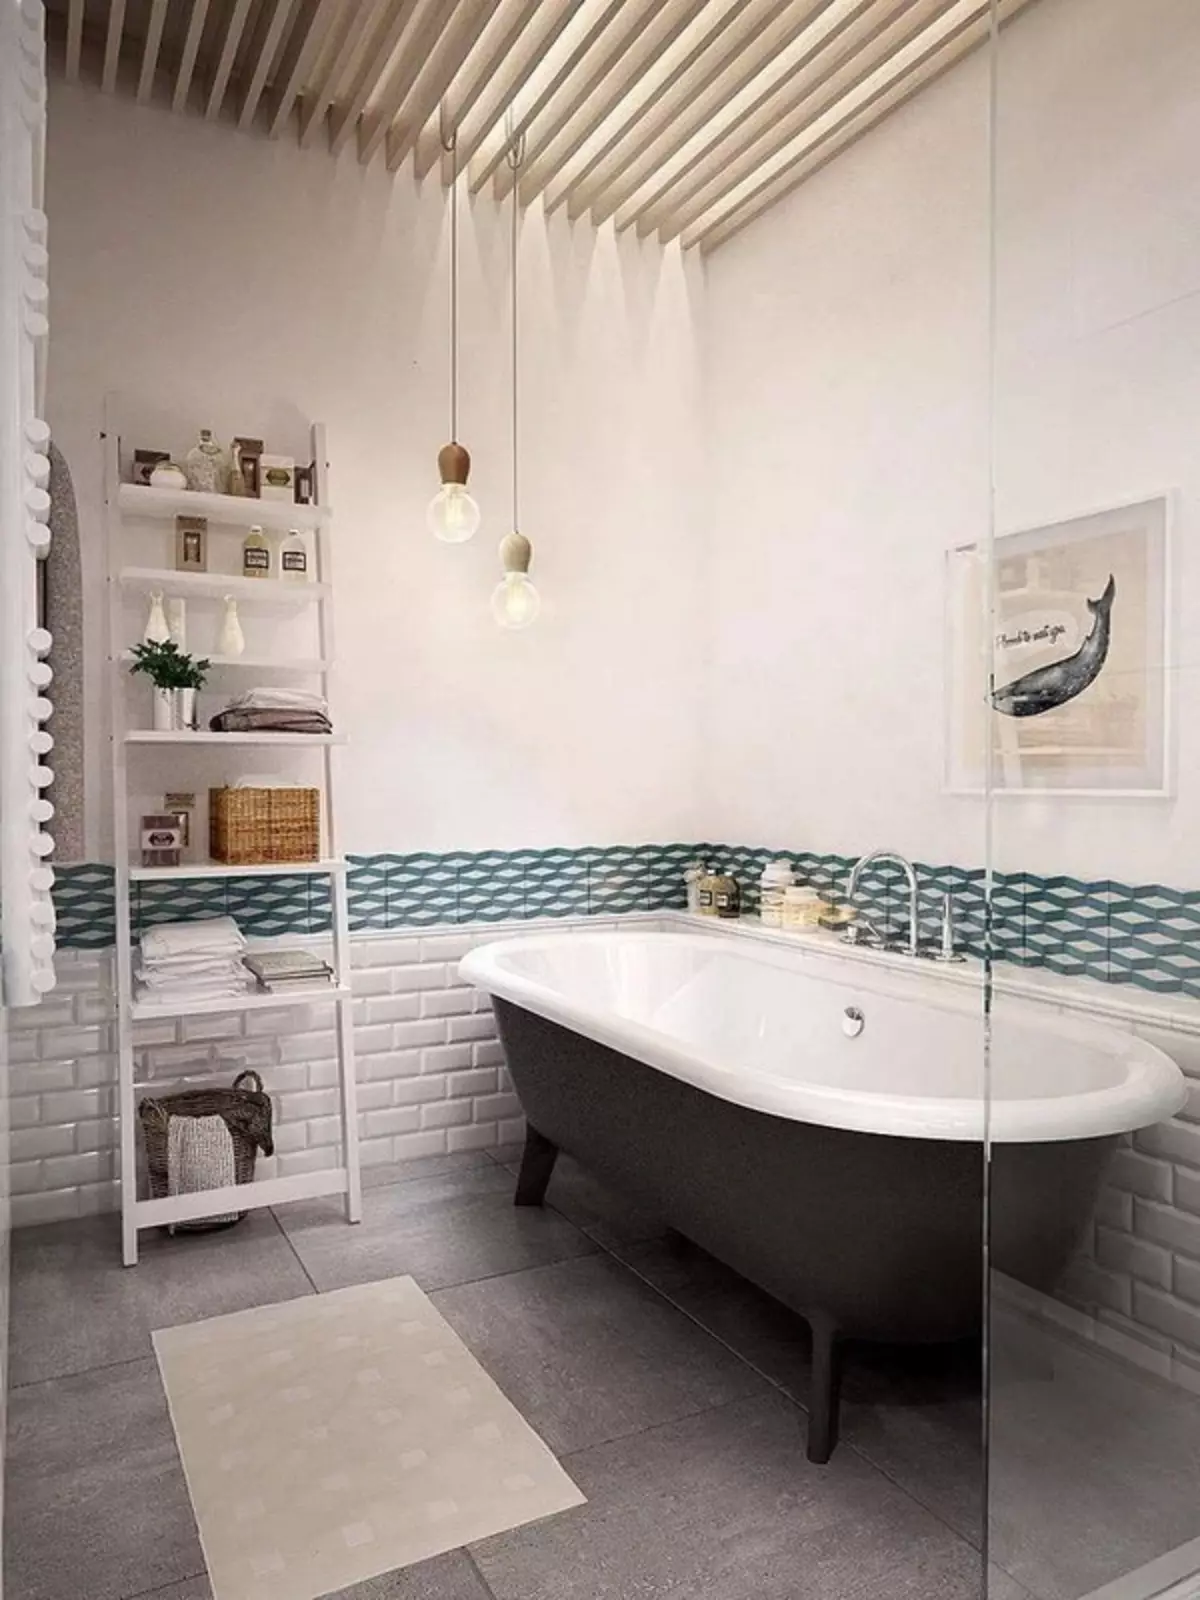 Badezimmer im skandinavischen Stil (66 Fotos): Innenarchitektur von einem kleinen Raum 3 und 4 Quadratmetern. M, die Ideen des Designs eines weißen Badezimmers, der Wahl des Zubehörs 21439_8